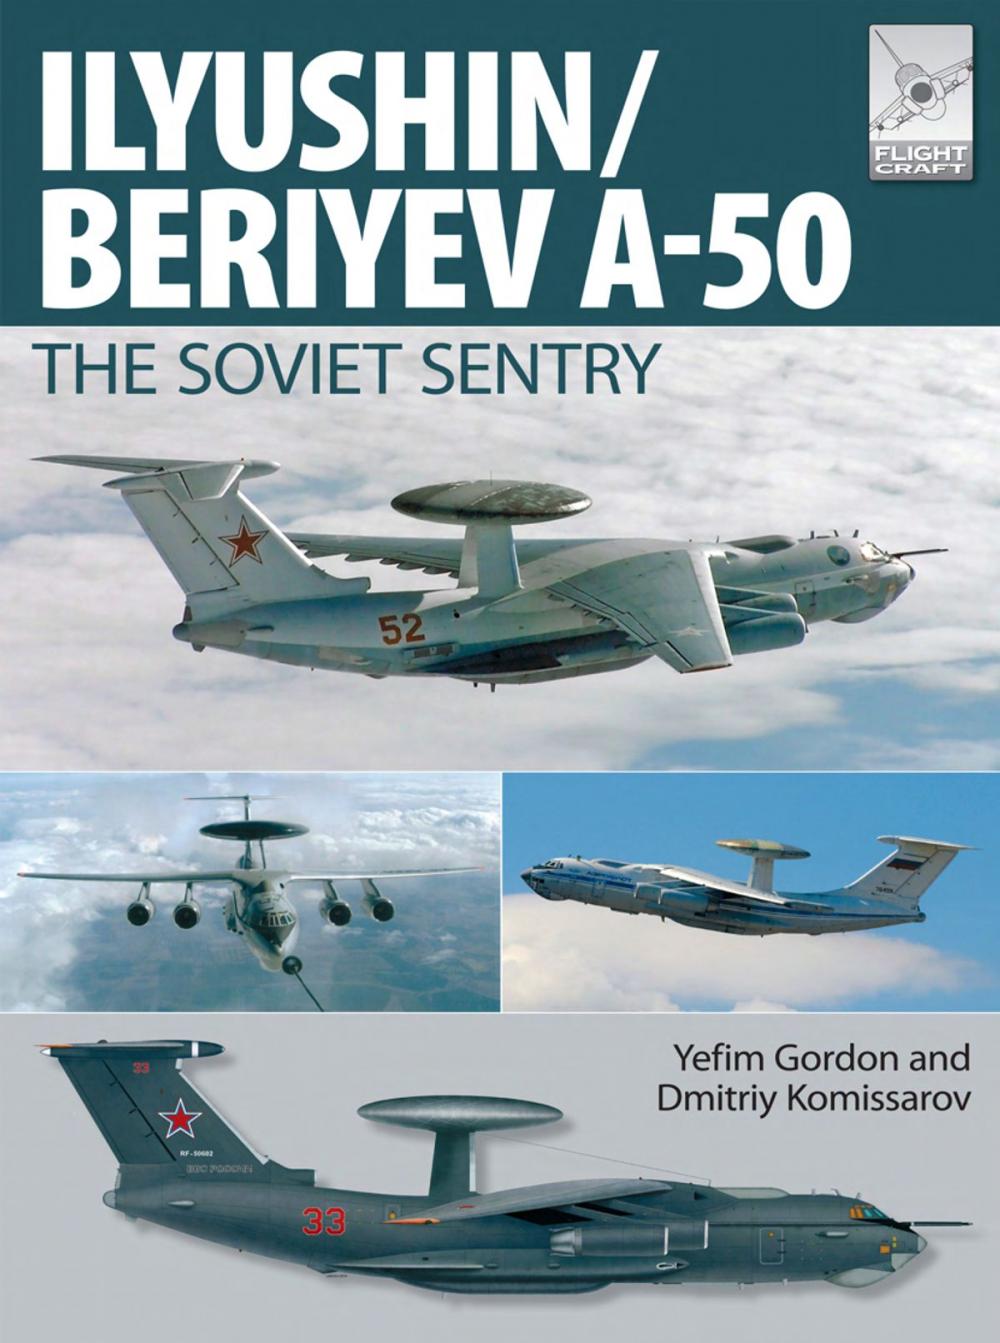 Big bigCover of Flight Craft 6: Ily'yushin/Beriyev A-50